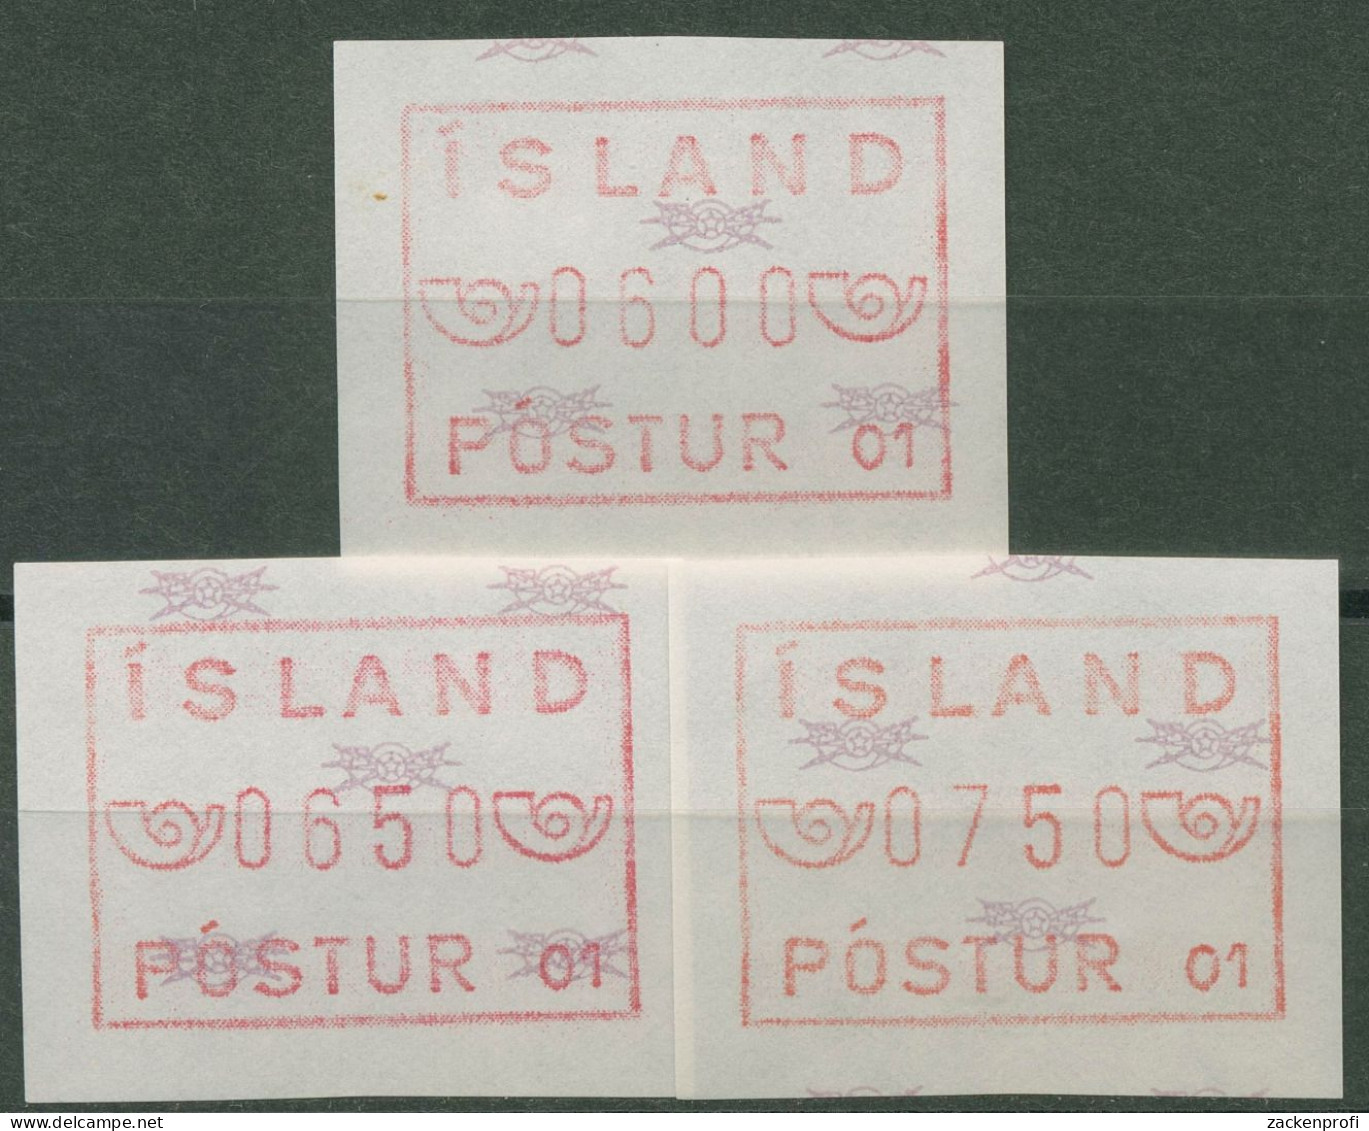 Island ATM 1983 Freimarke Automat 01, Satz 3 Werte, ATM 1.1.1 B S Postfrisch - Vignettes D'affranchissement (Frama)